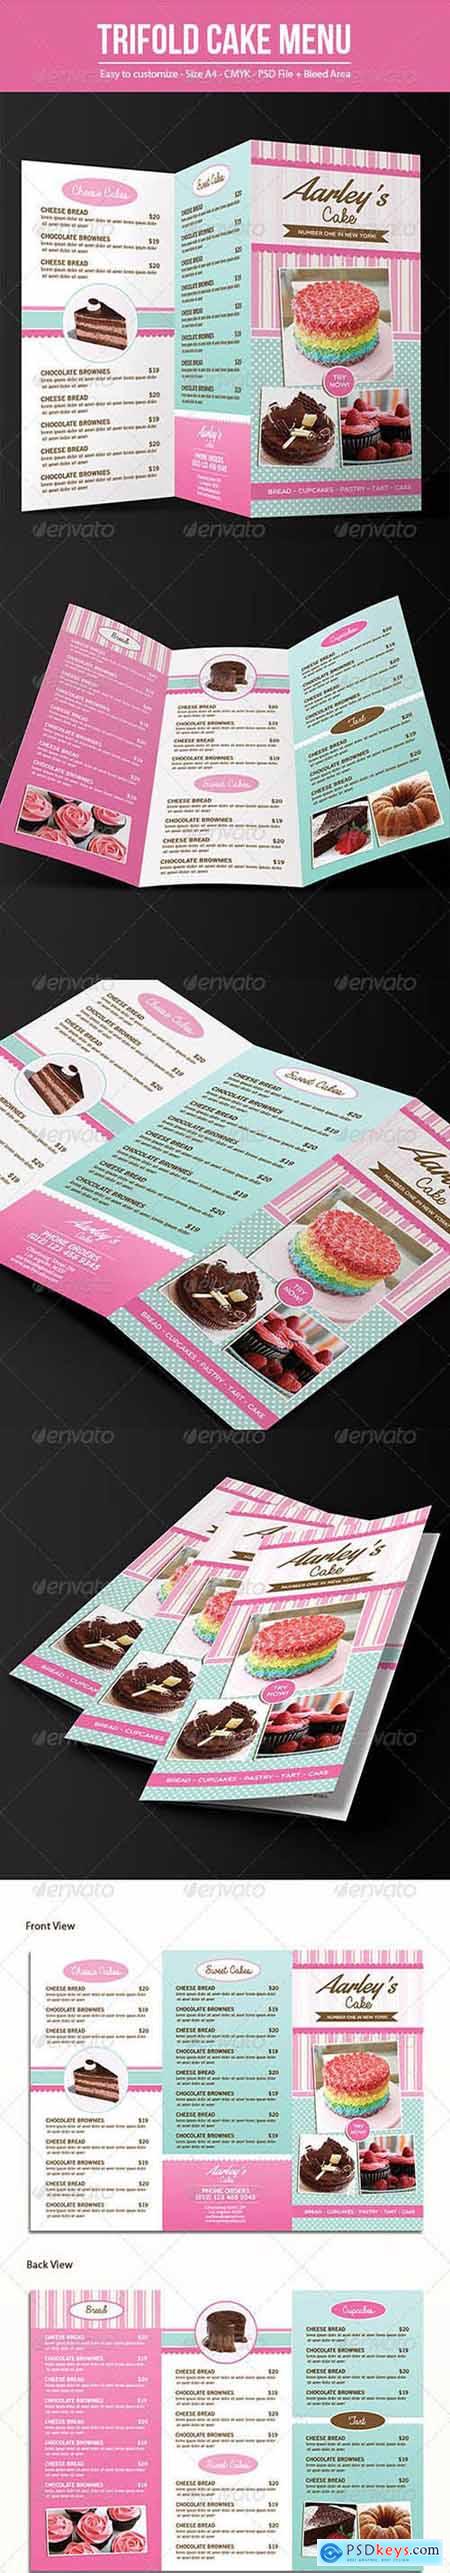 Graphicriver Trifold Cake Menu + Business Card